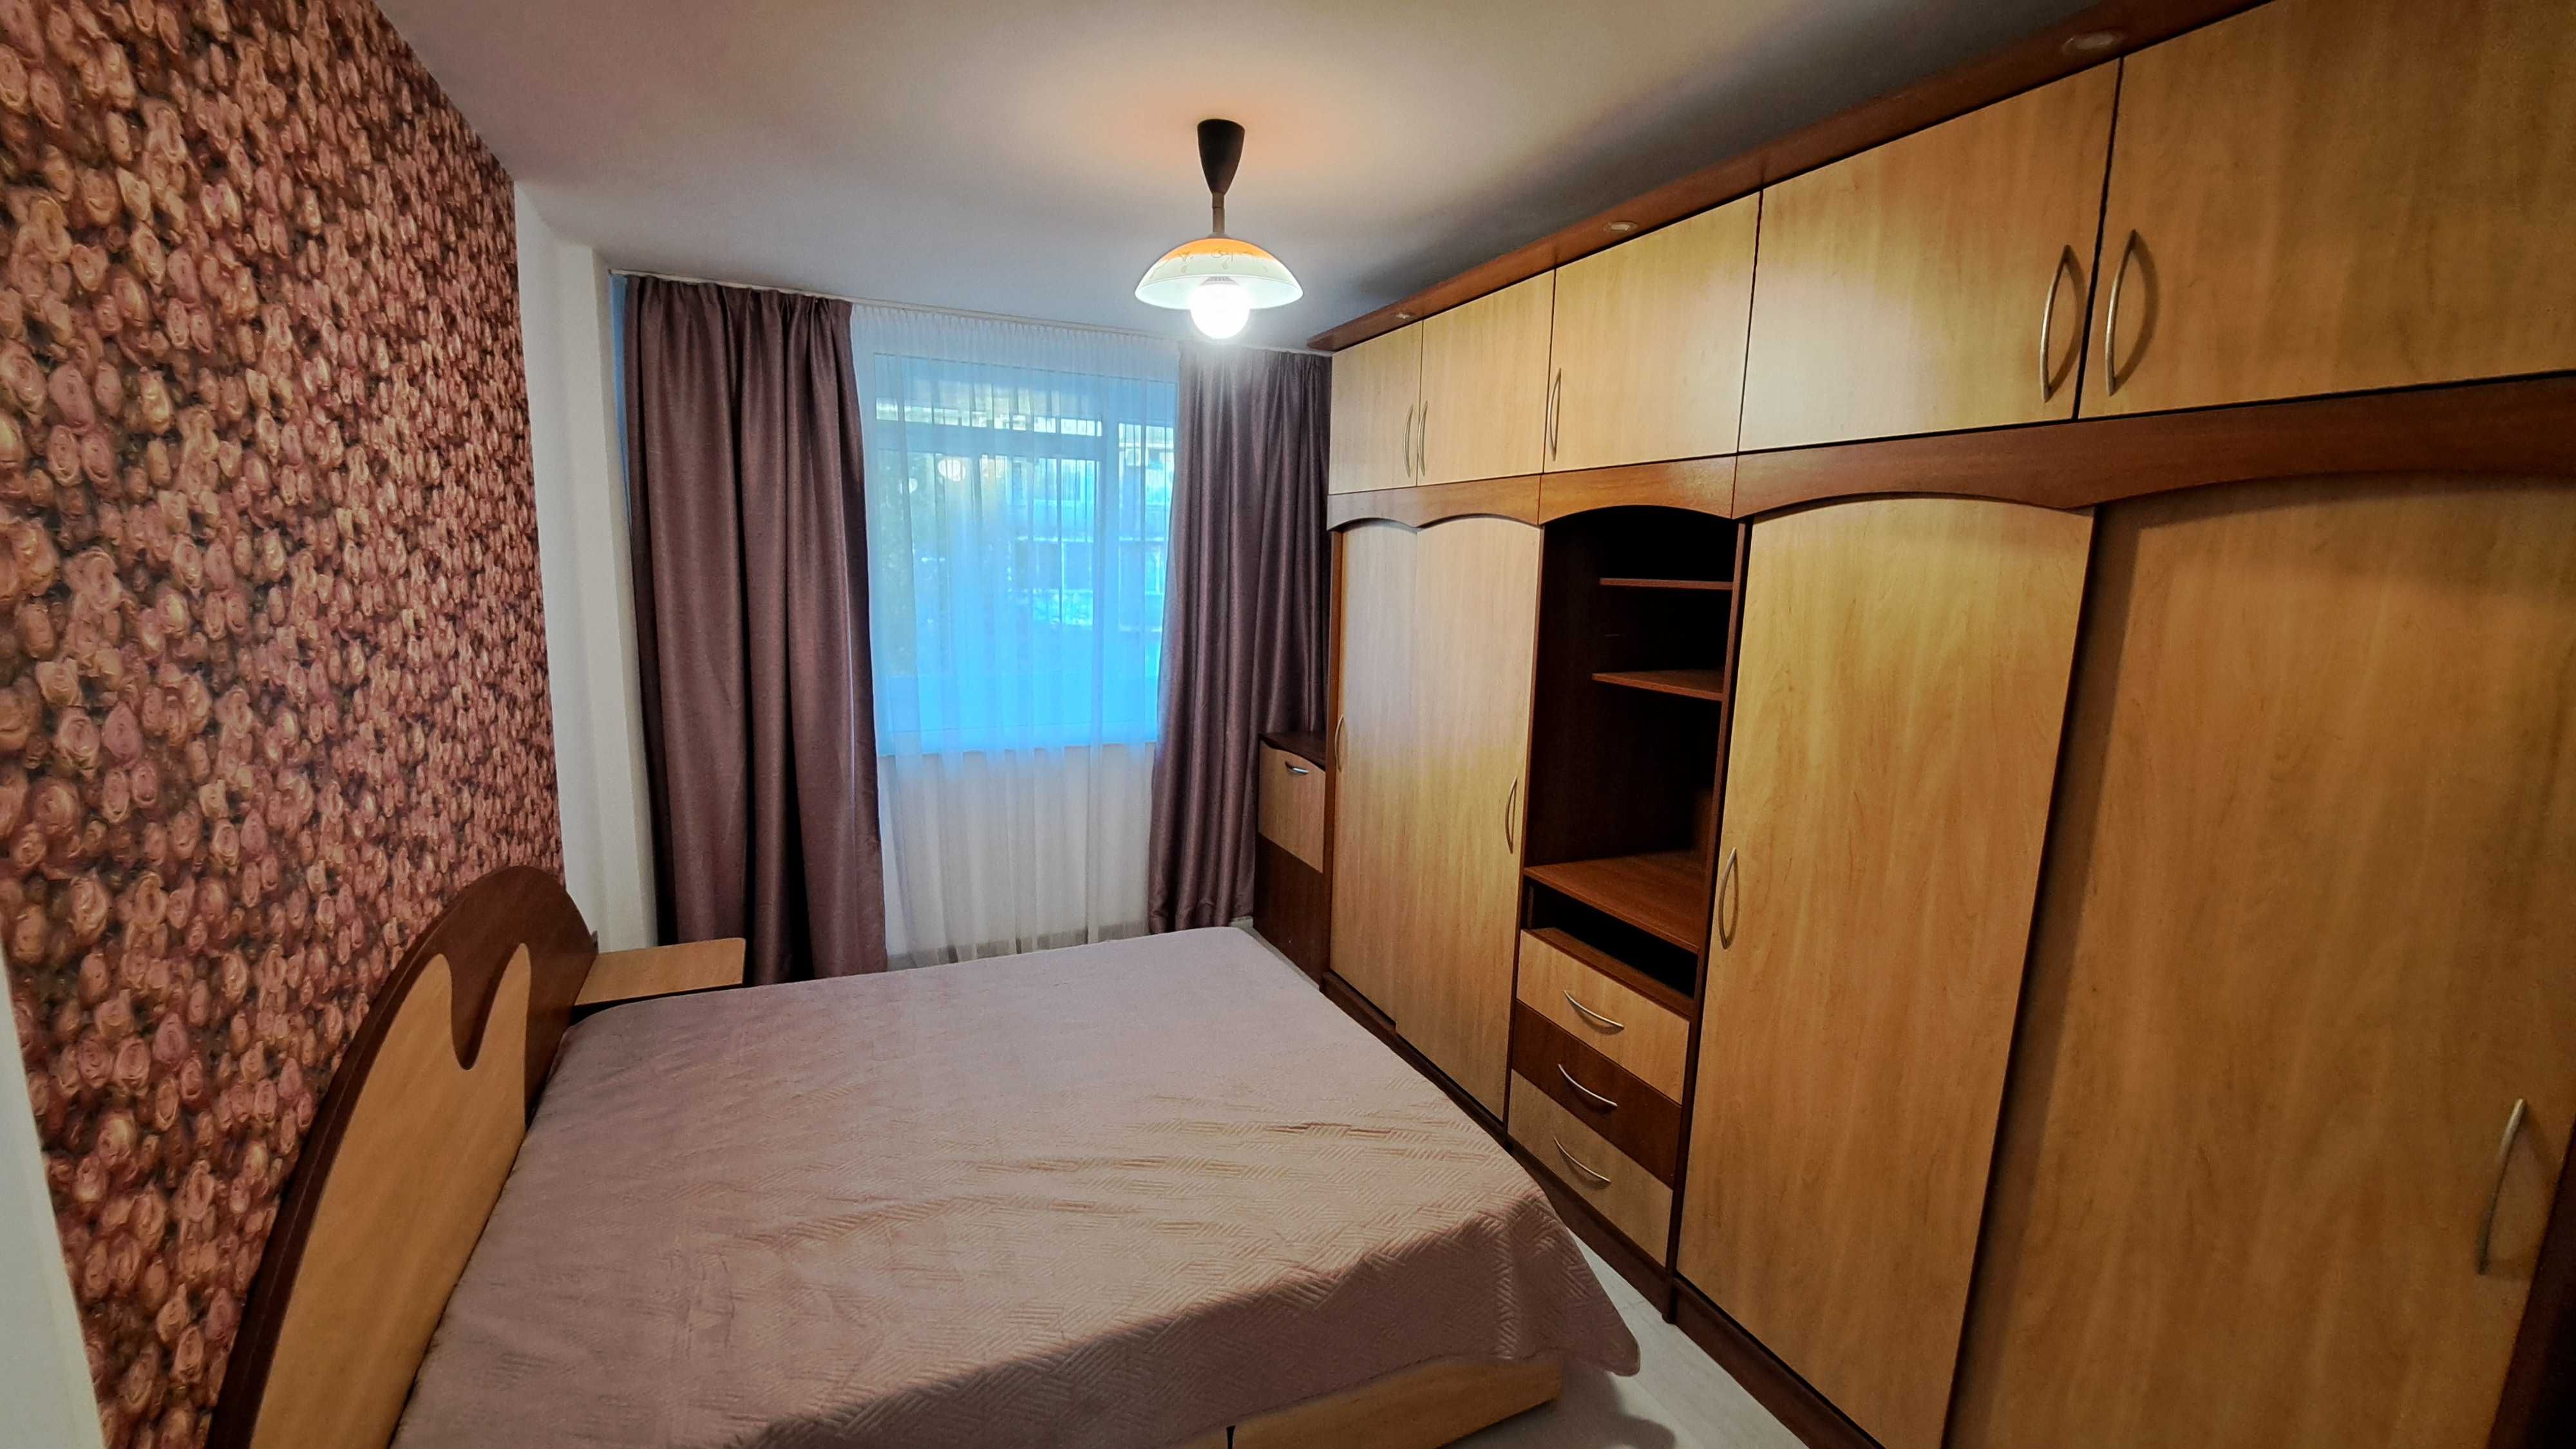 Двустаен апартамент в Левски до 2 корпус ВИНС